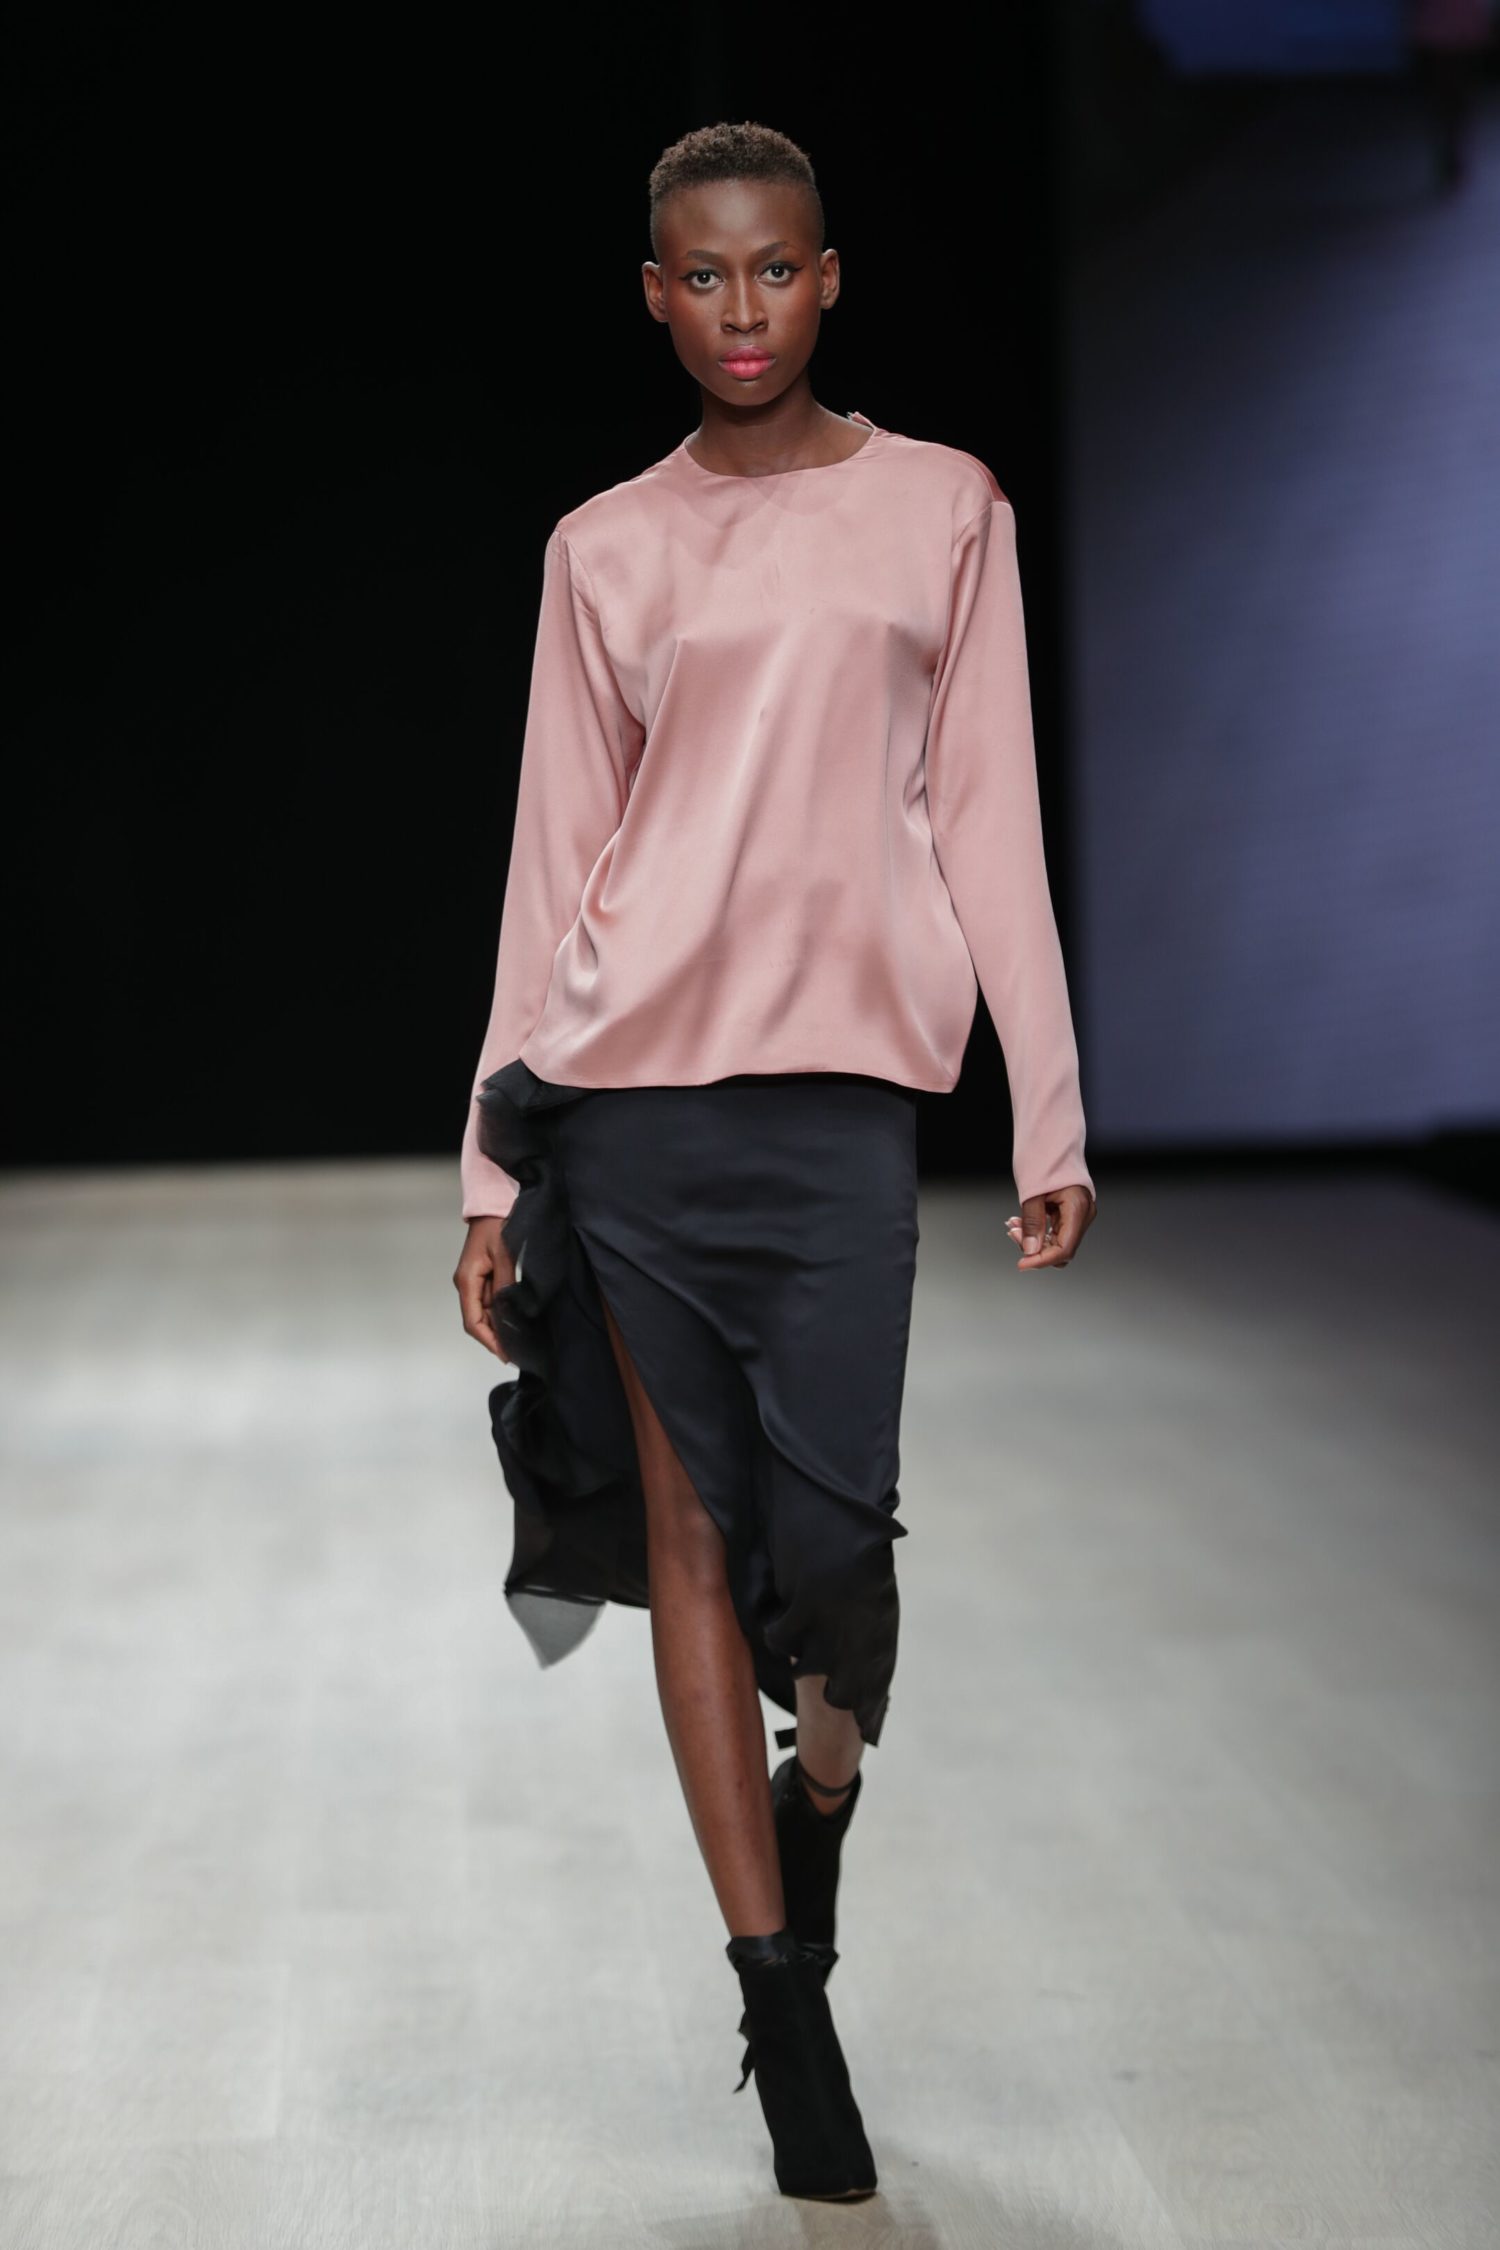 ARISE Fashion Week 2019 | Bridget Awosika